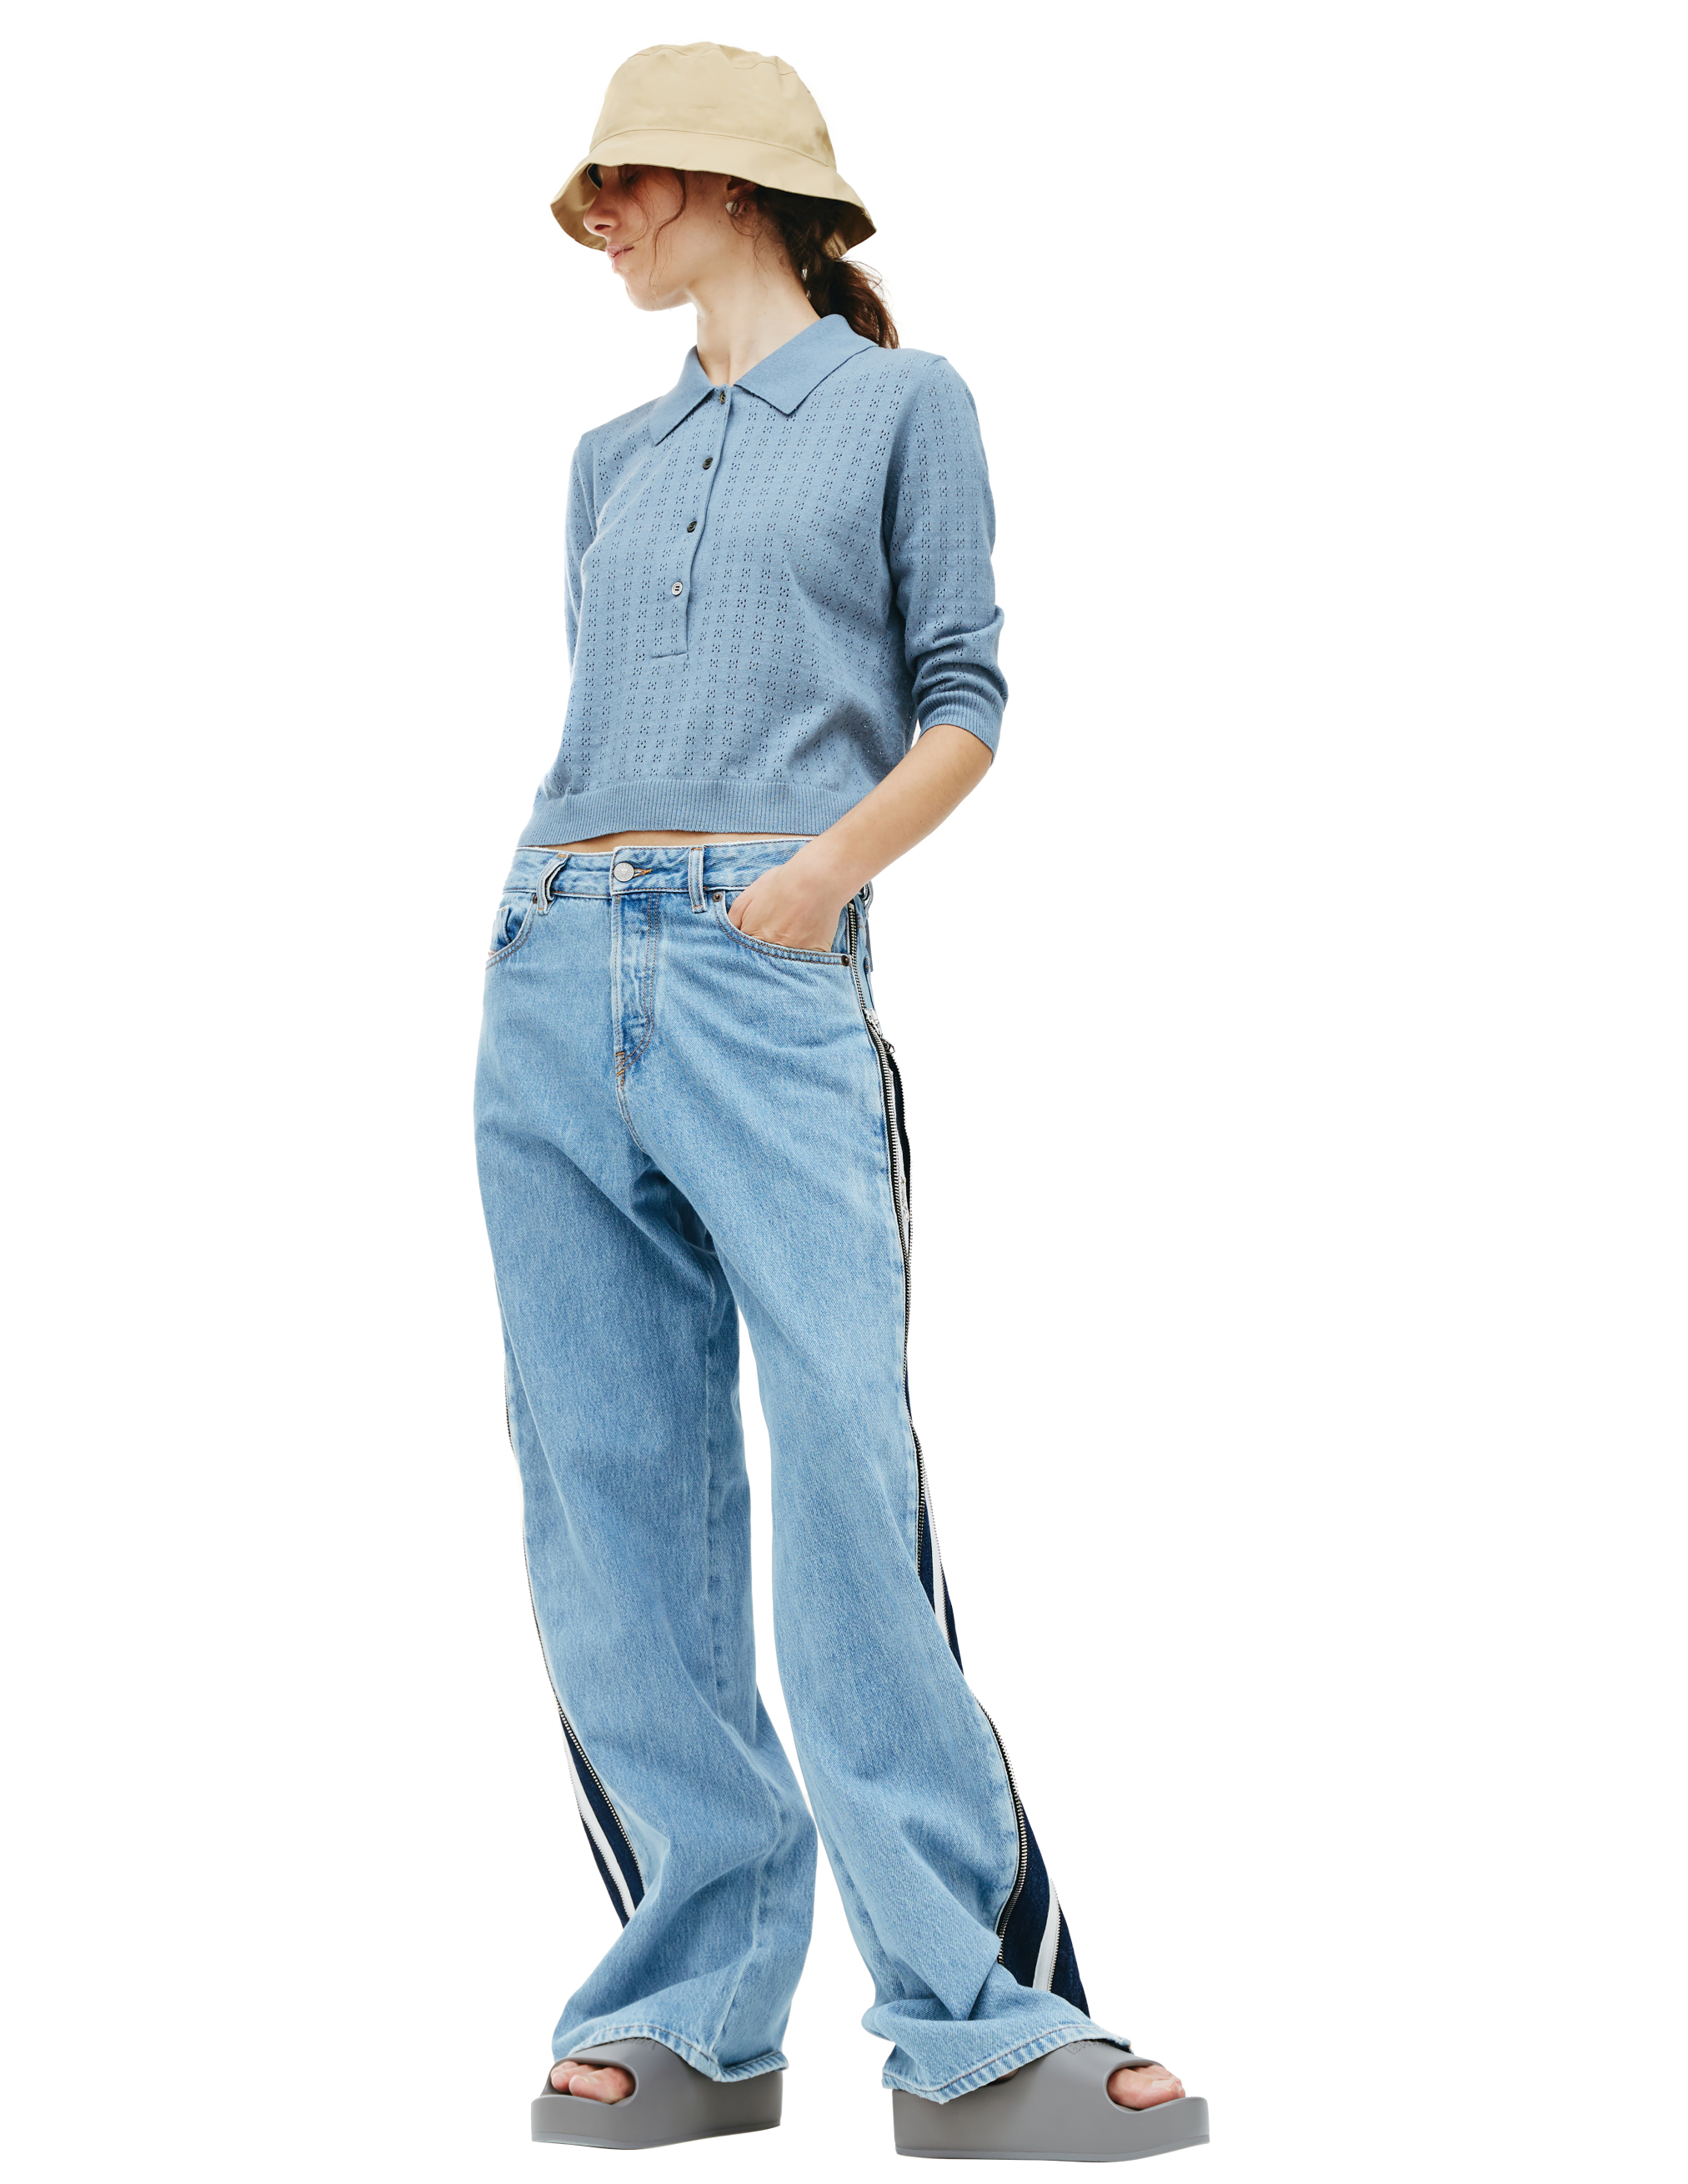 Широкие джинсы с молниями Diesel A0554709D1701, размер 33;32;30